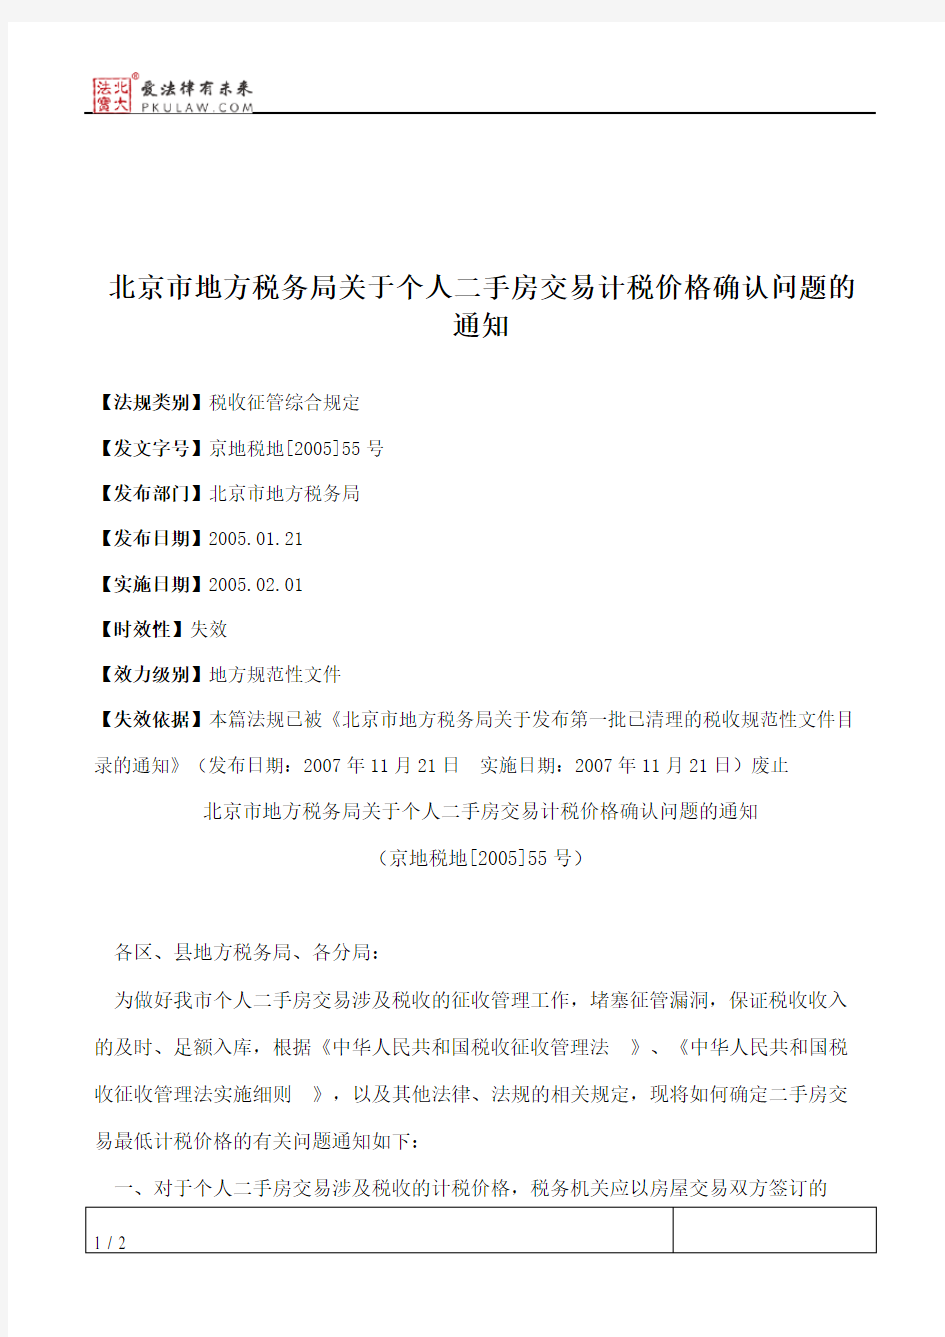 北京市地方税务局关于个人二手房交易计税价格确认问题的通知